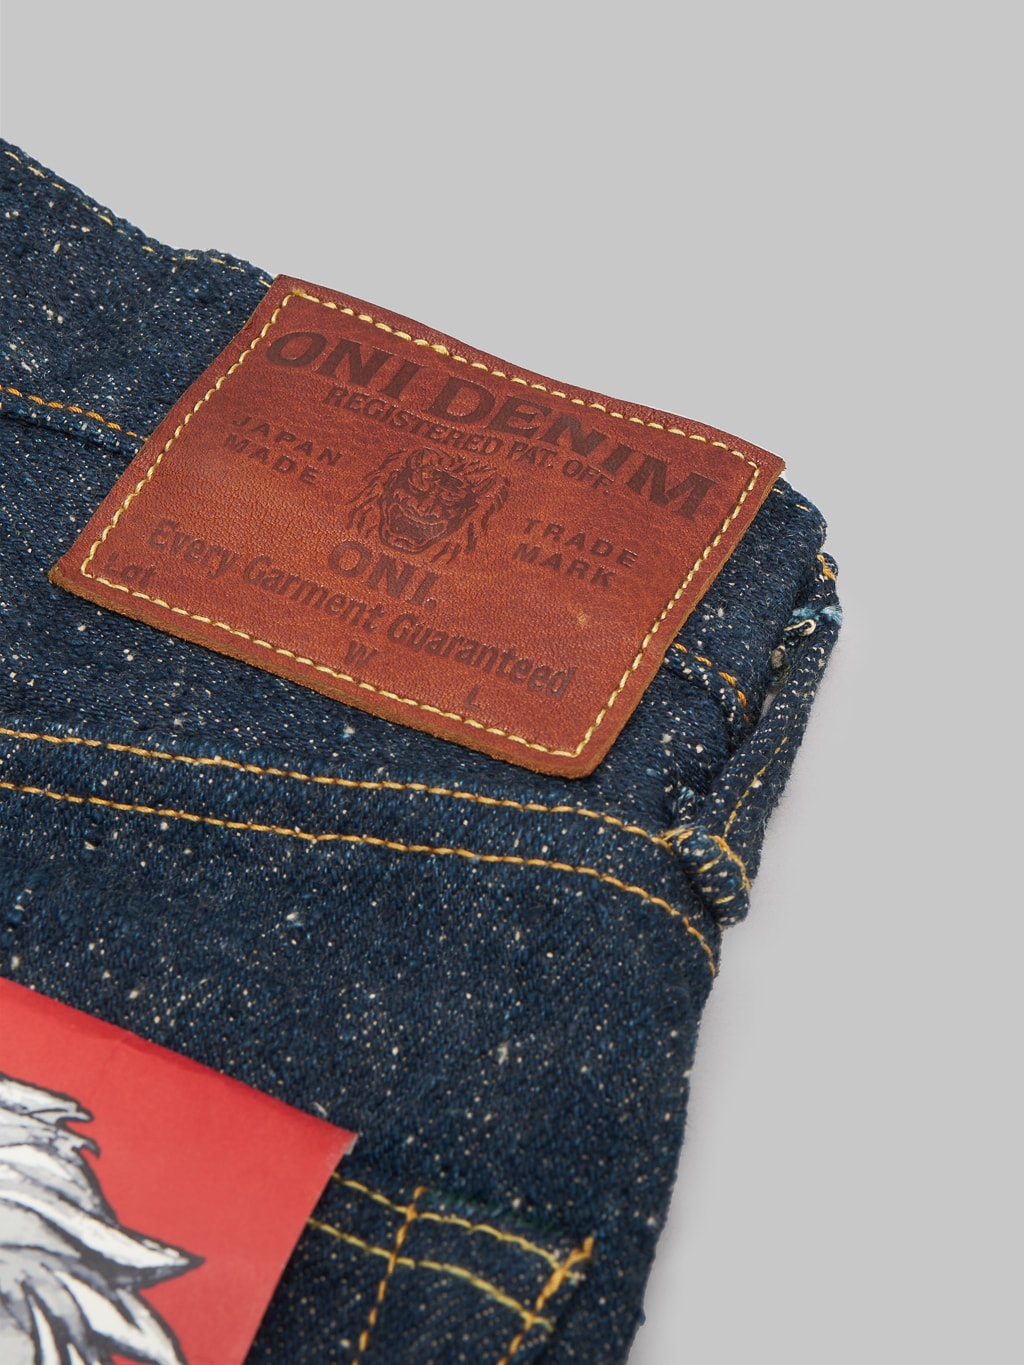 ONI Denim 246SESR Secret Super Rough Neat Straight selvedge Jeans patch closeup